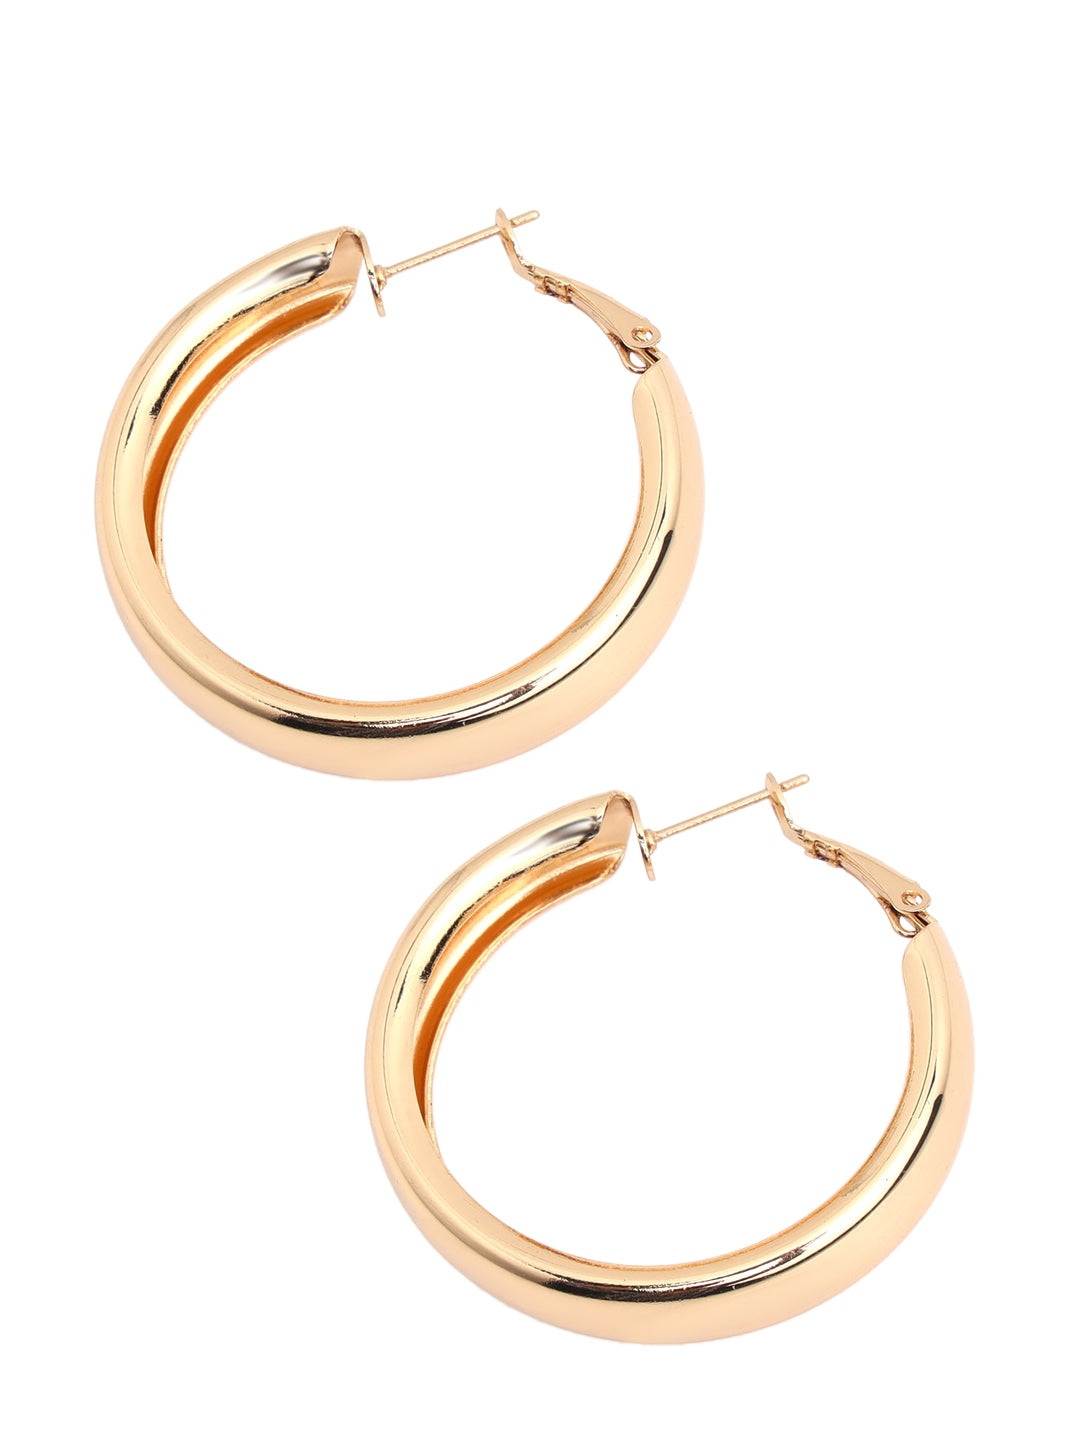 Prita by Priyaasi Glossy Golden Round Gold-Plated Hoop Earrings